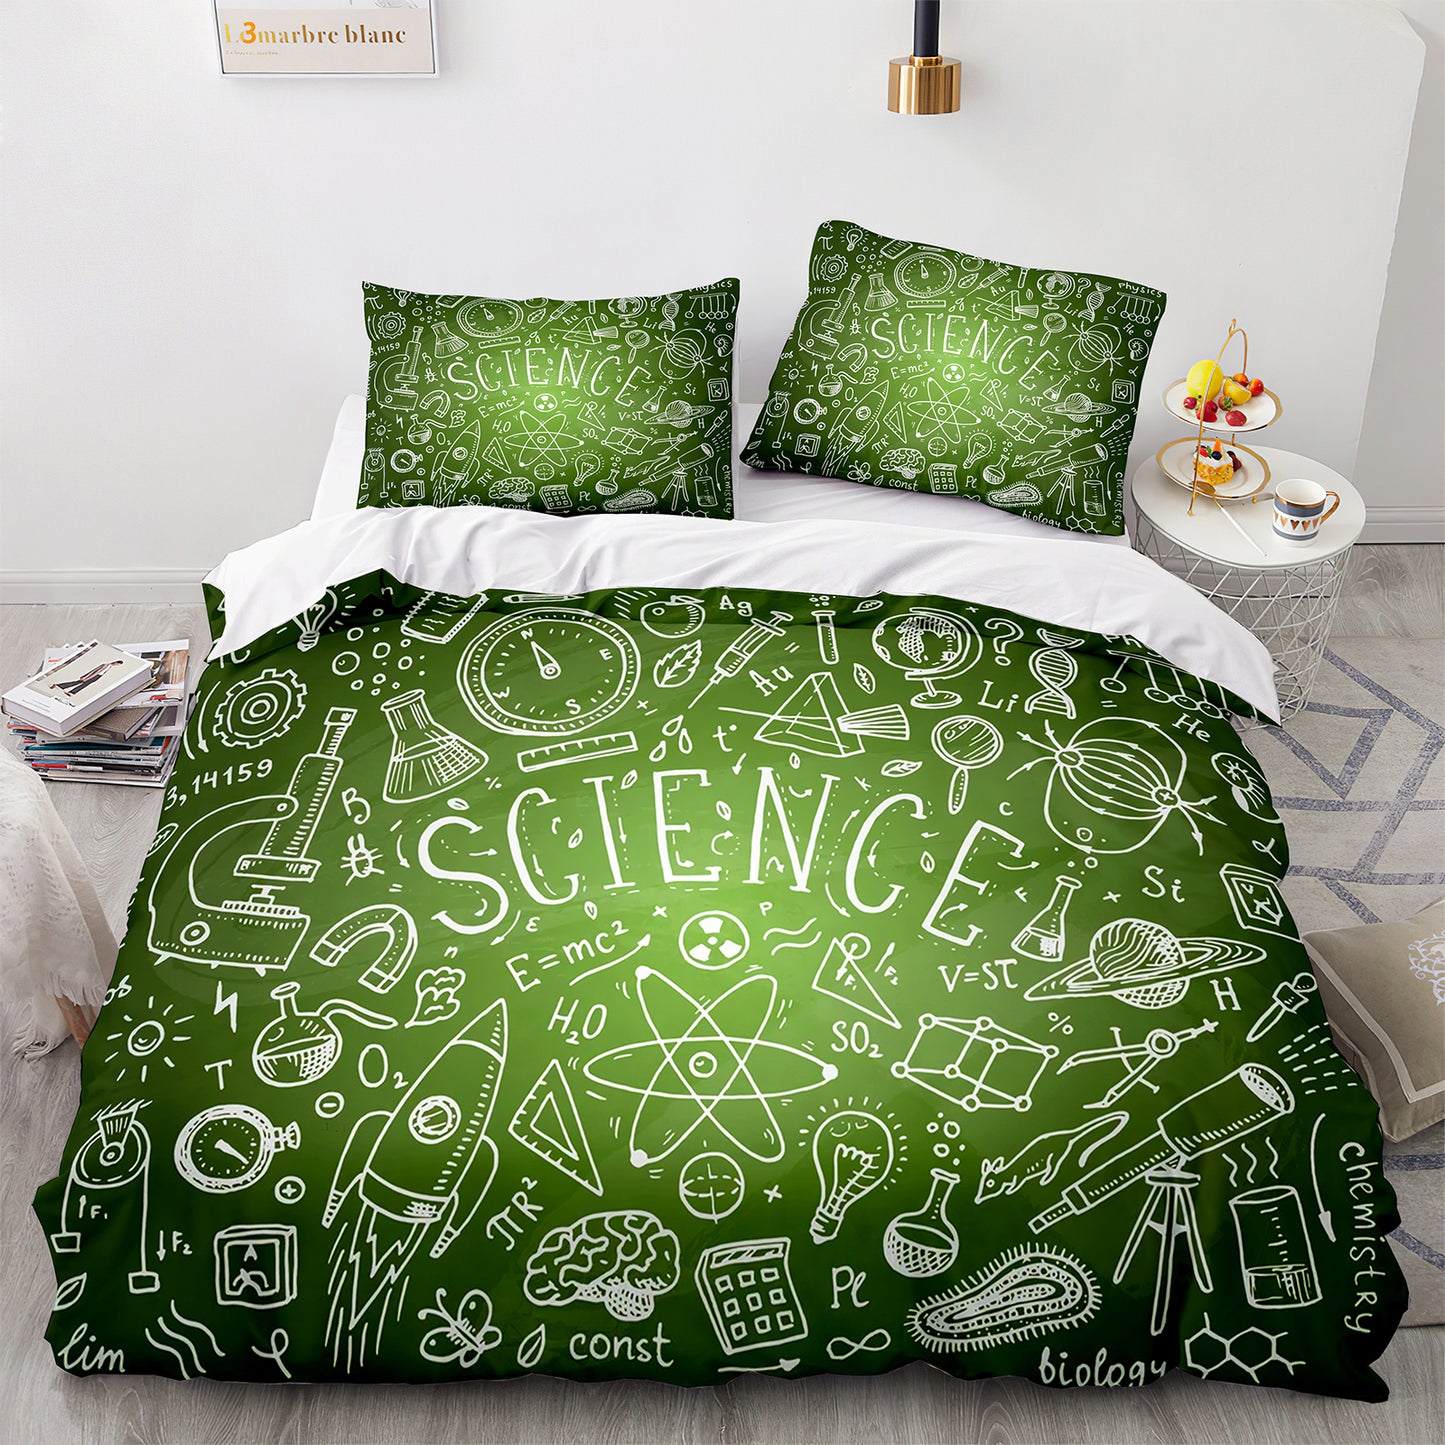 Cutom Bettbezug-Set Muster Chic Bettbezug King Size für Teenager Erwachsene Bettwäsche-Set mit Kissenbezügen GS3010